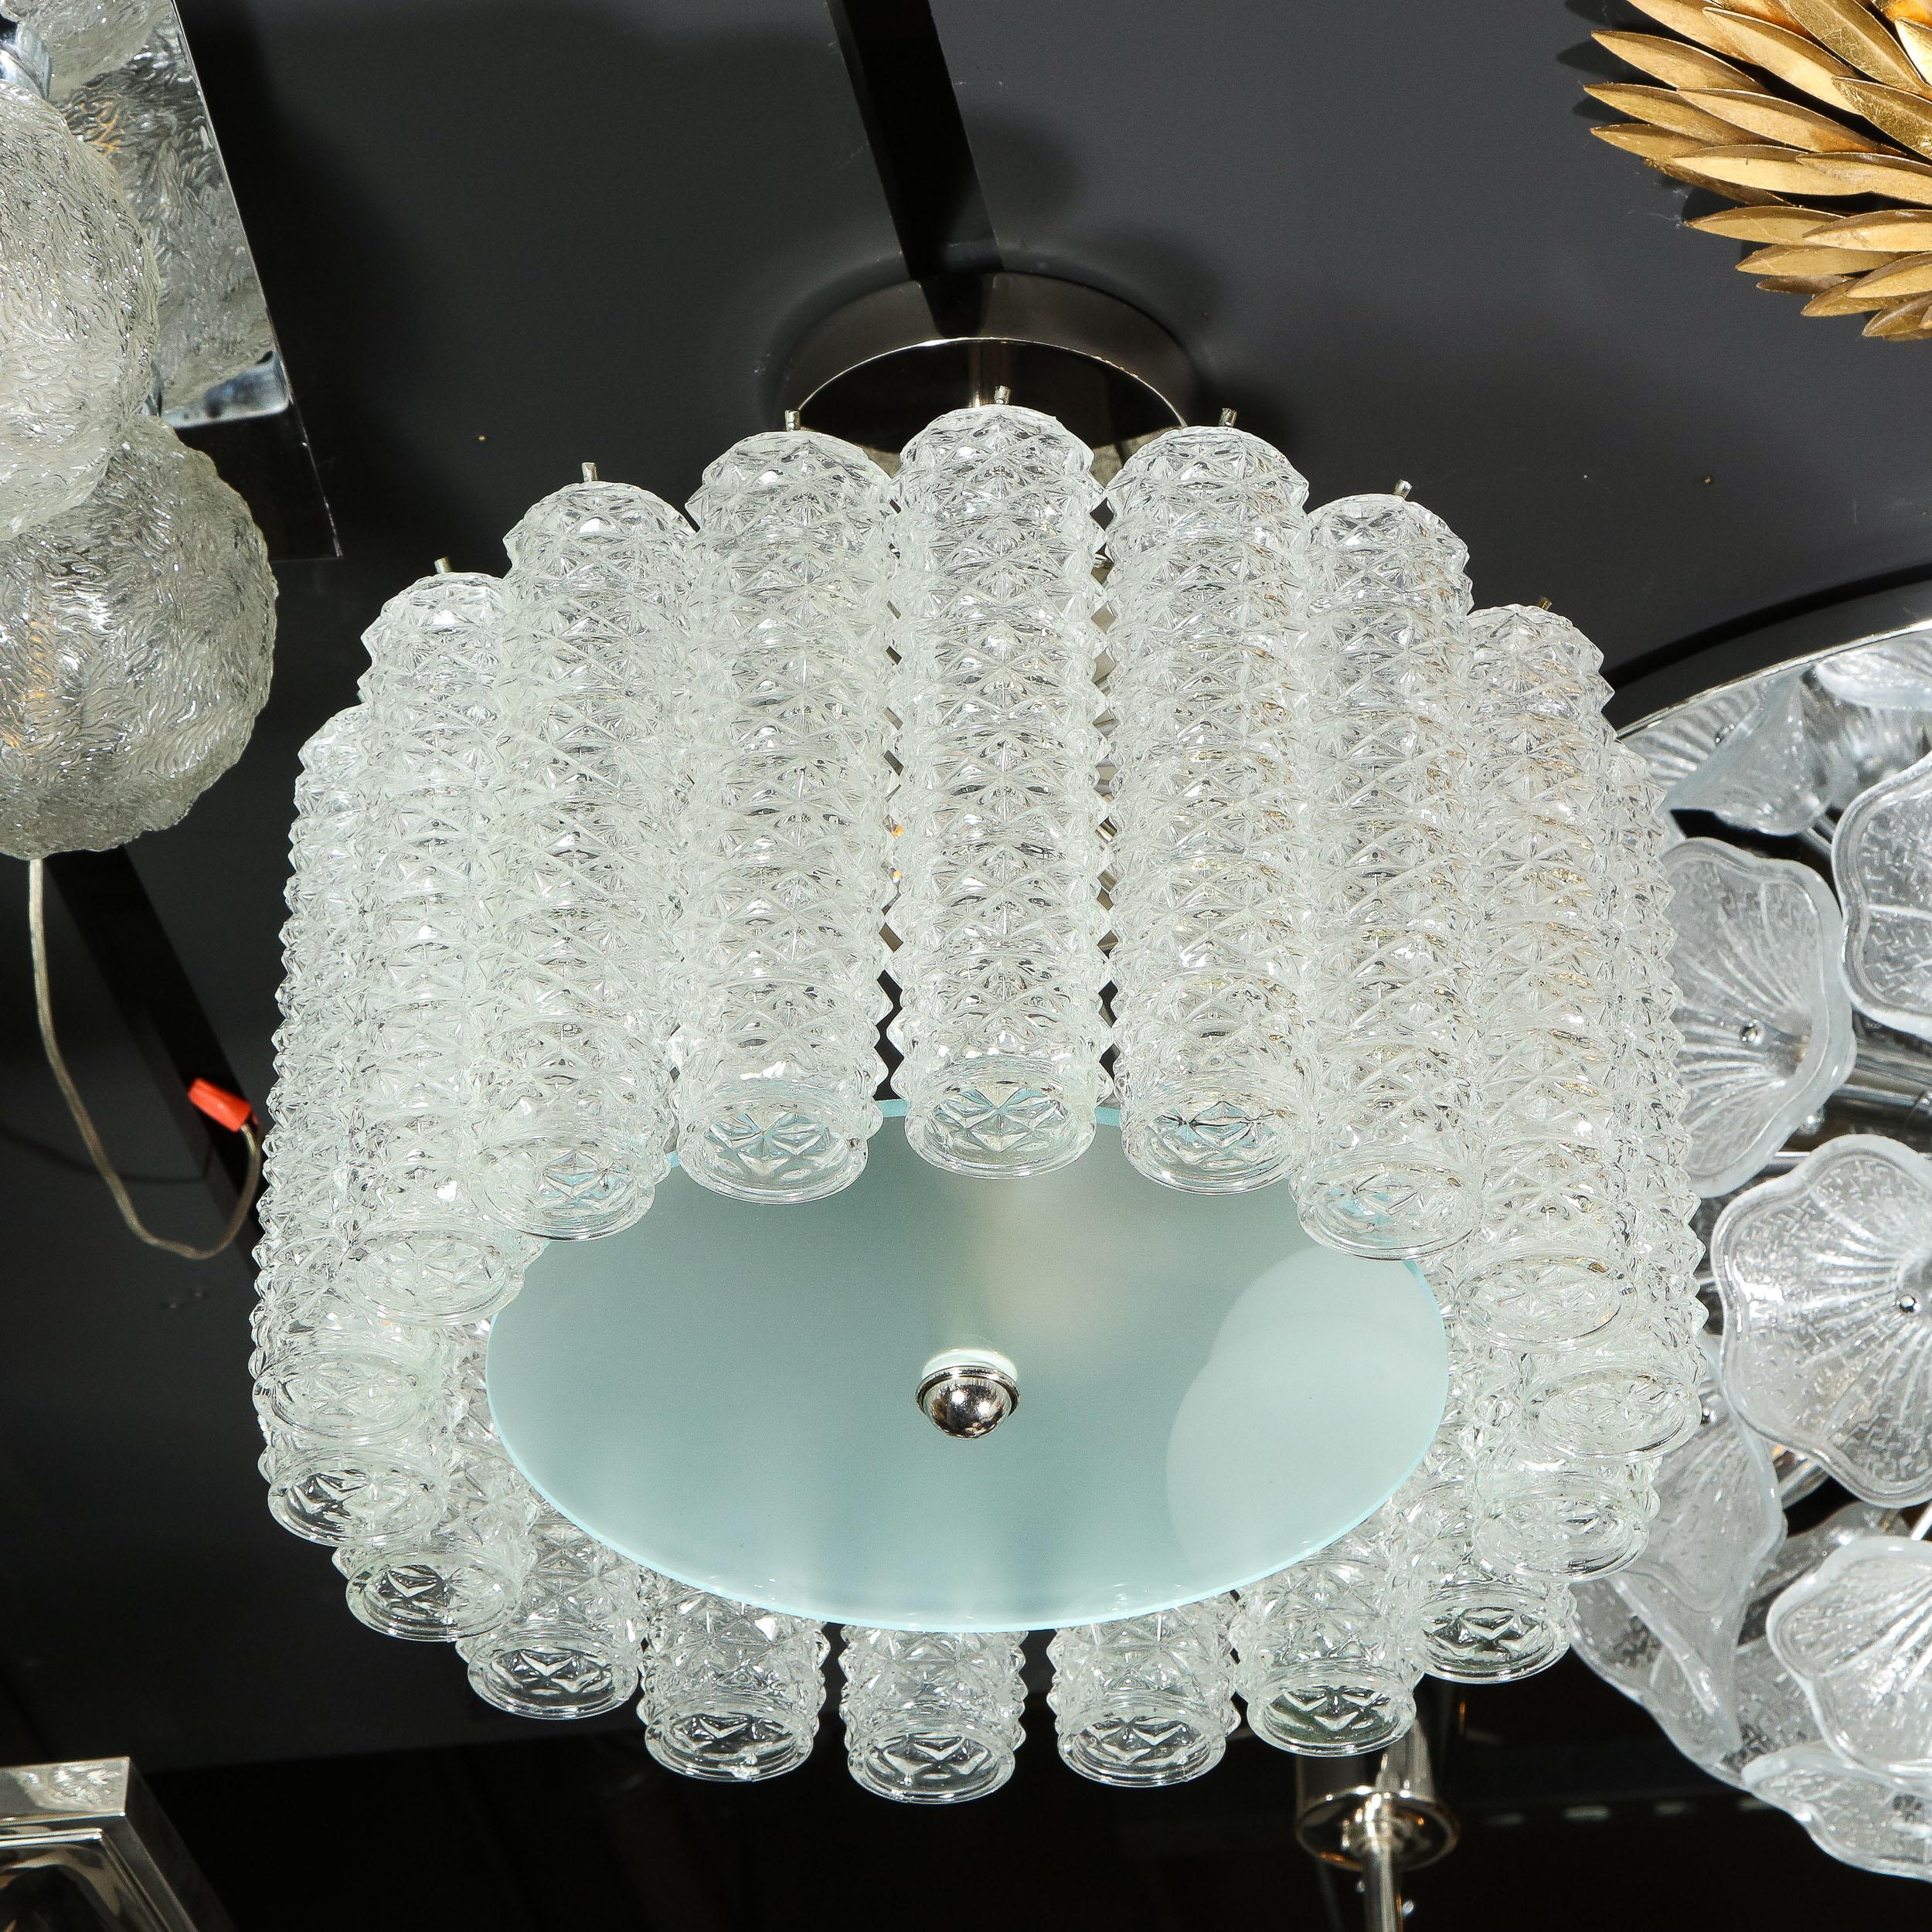 sea glass chandelier